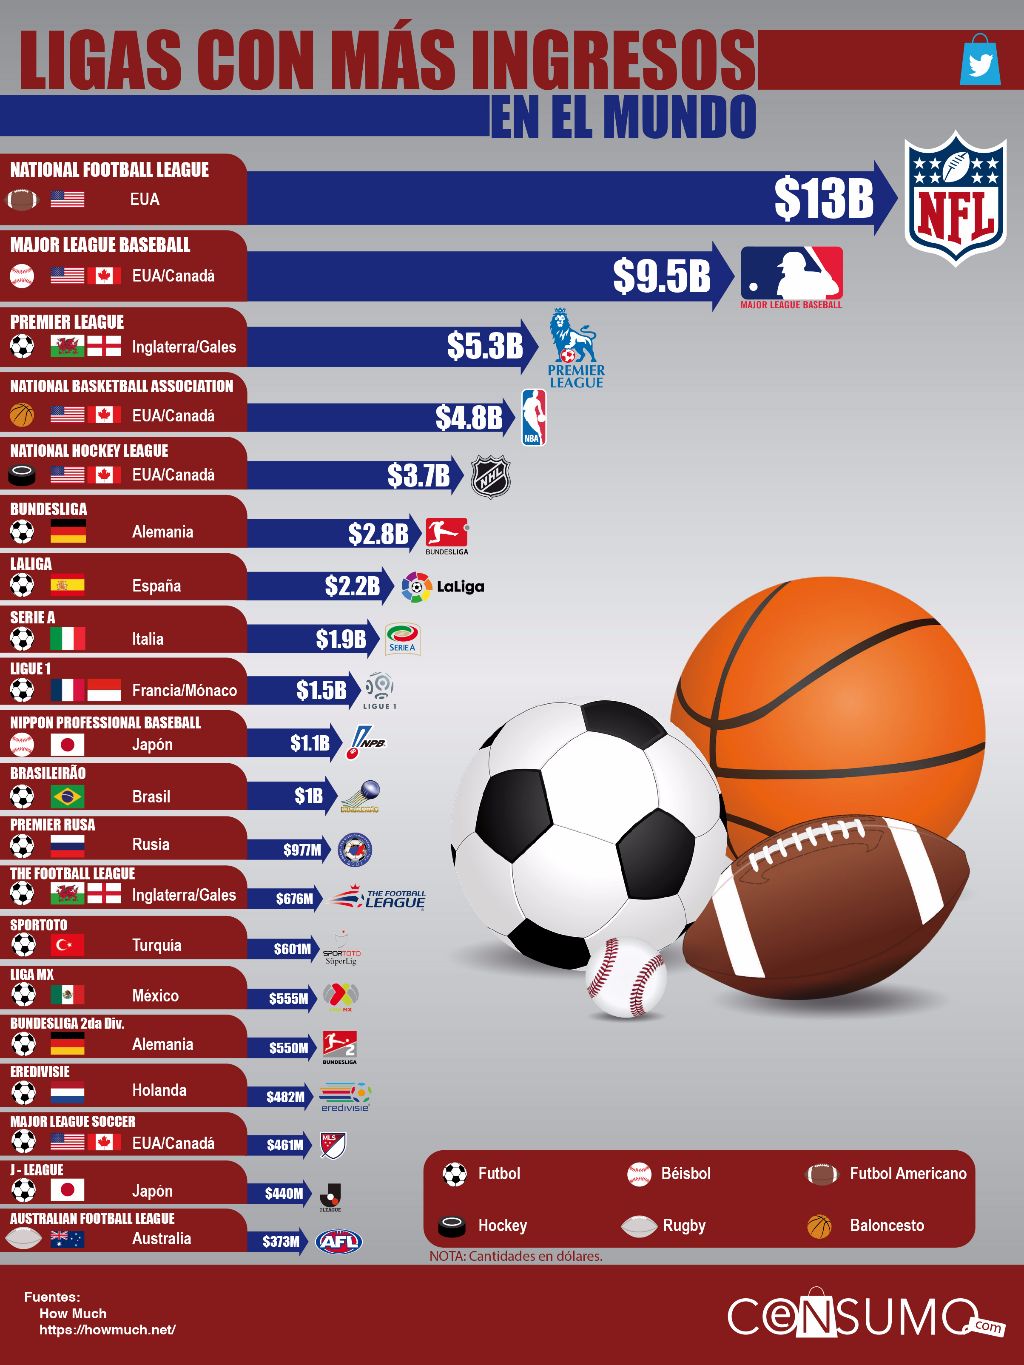 Las ligas deportivas con más ingresos en el mundo (Ligas millonarias)